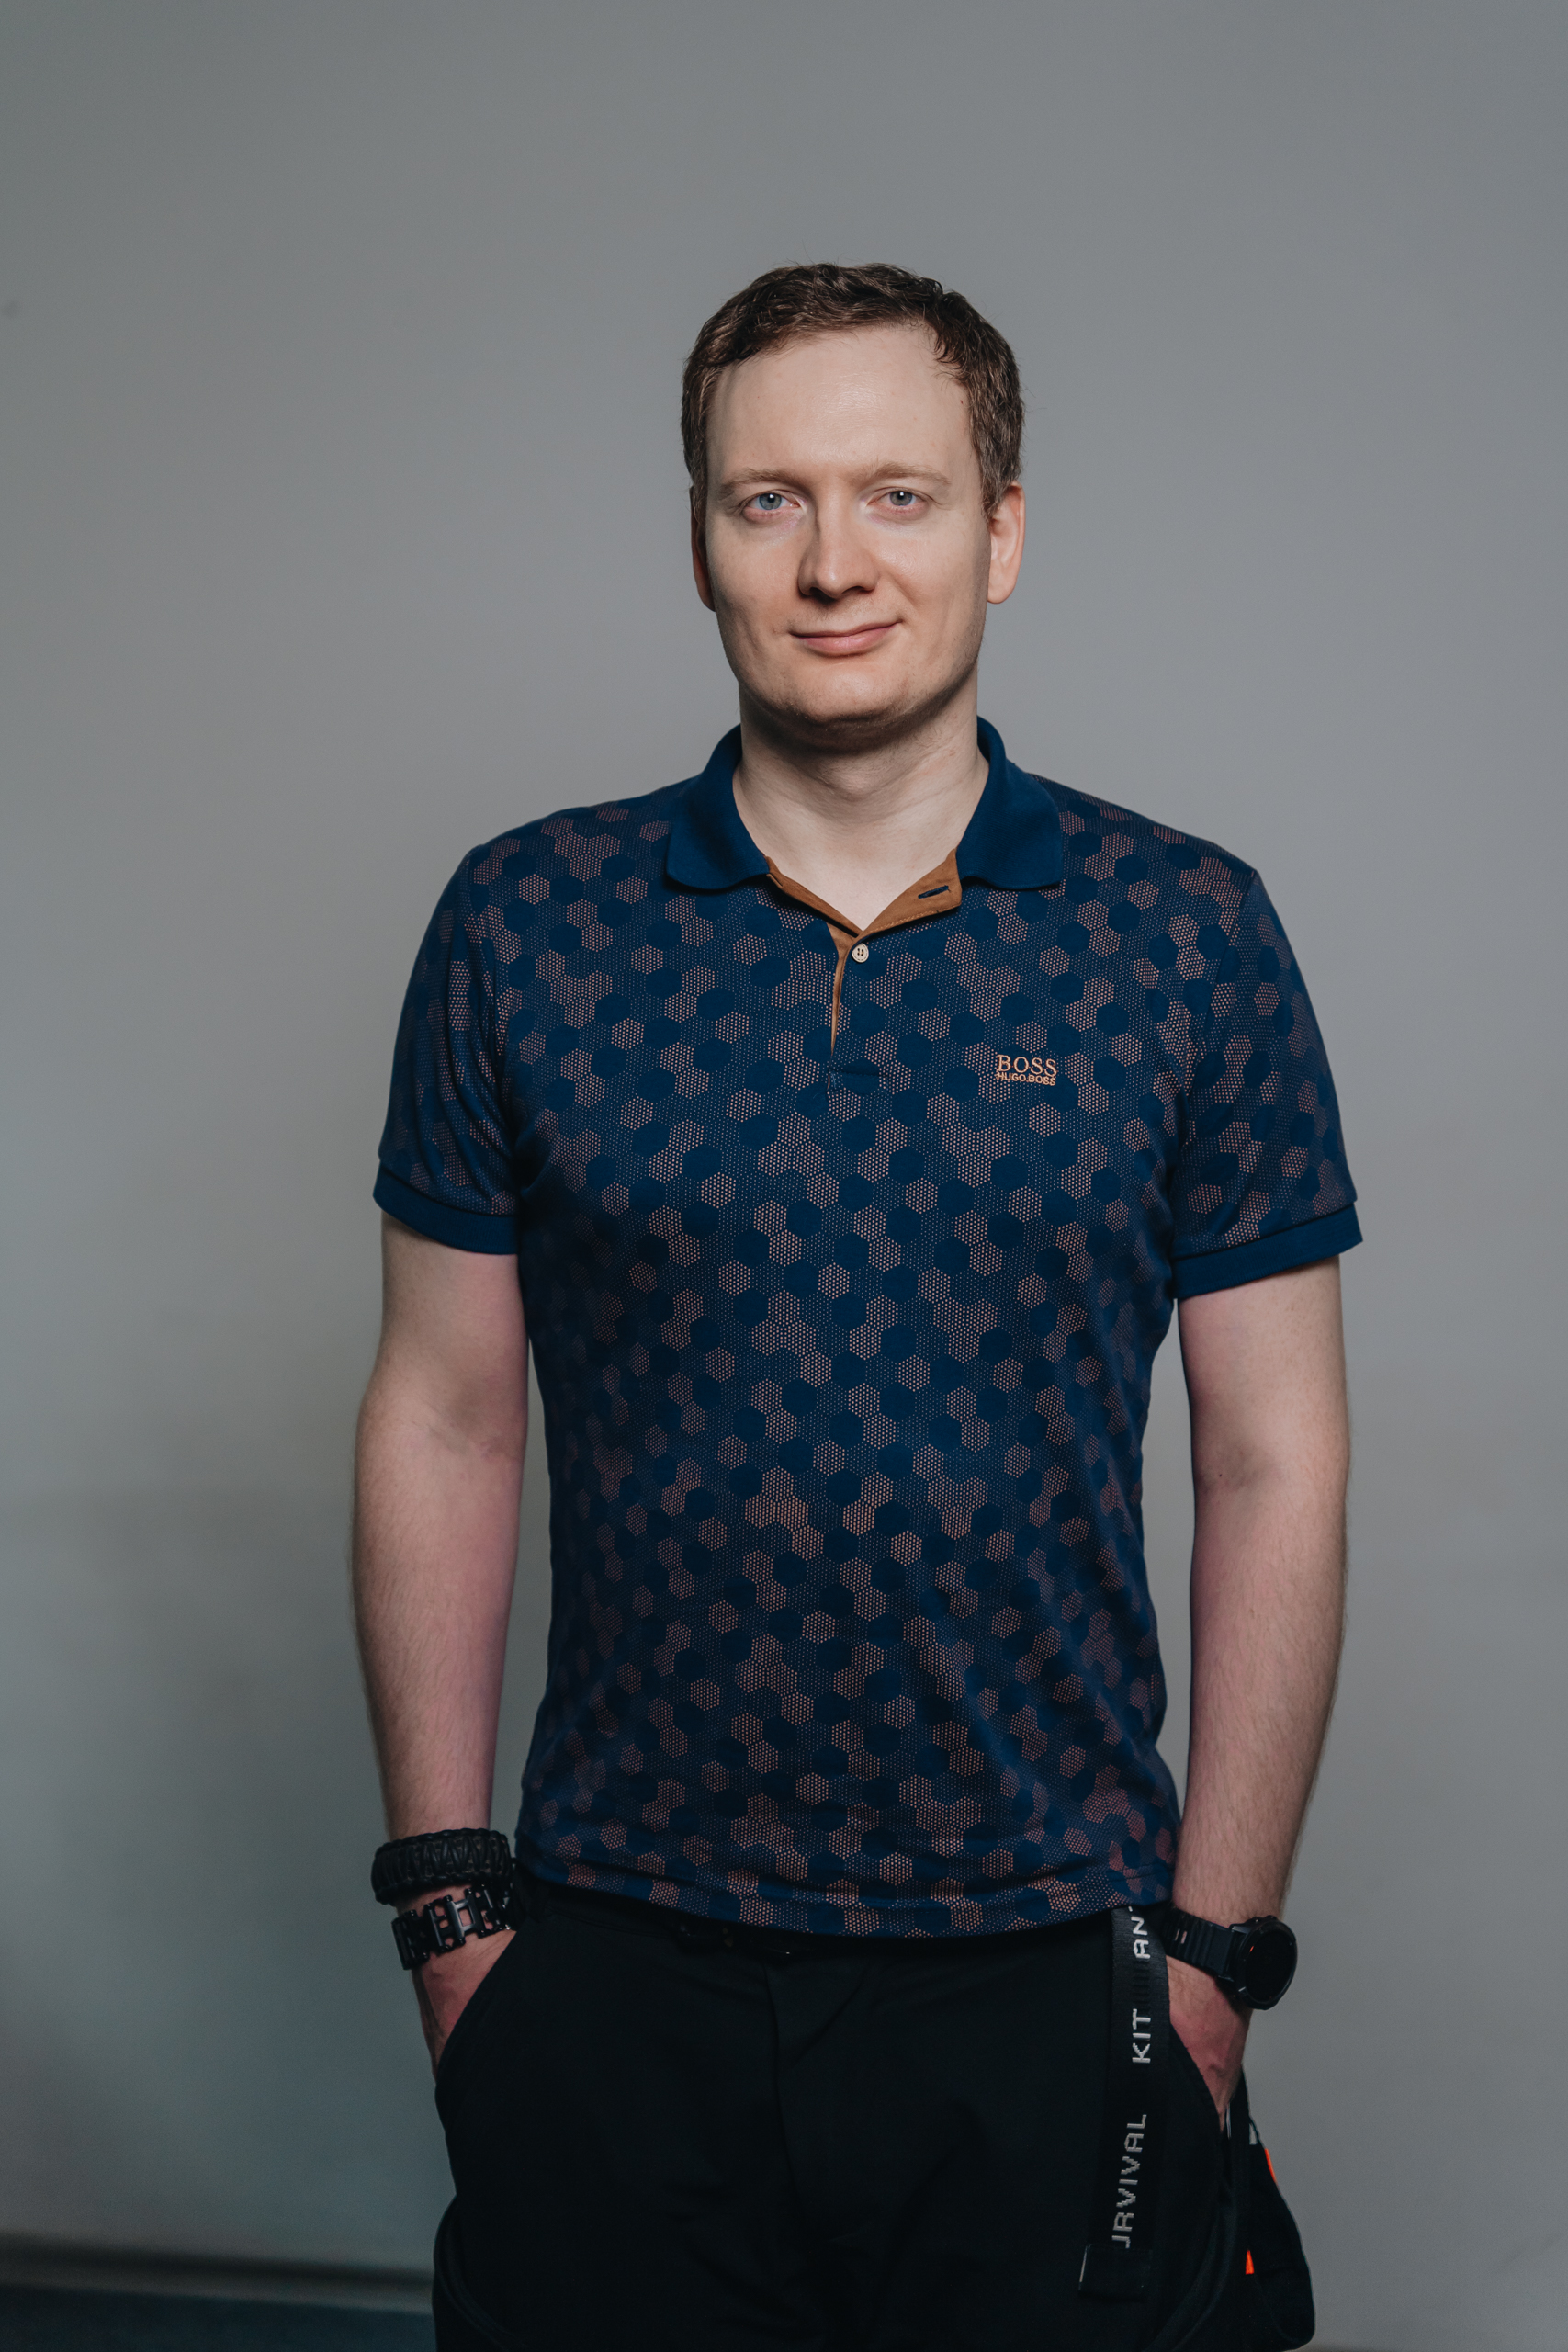 Николай Макаров, data platform lead в Altenar